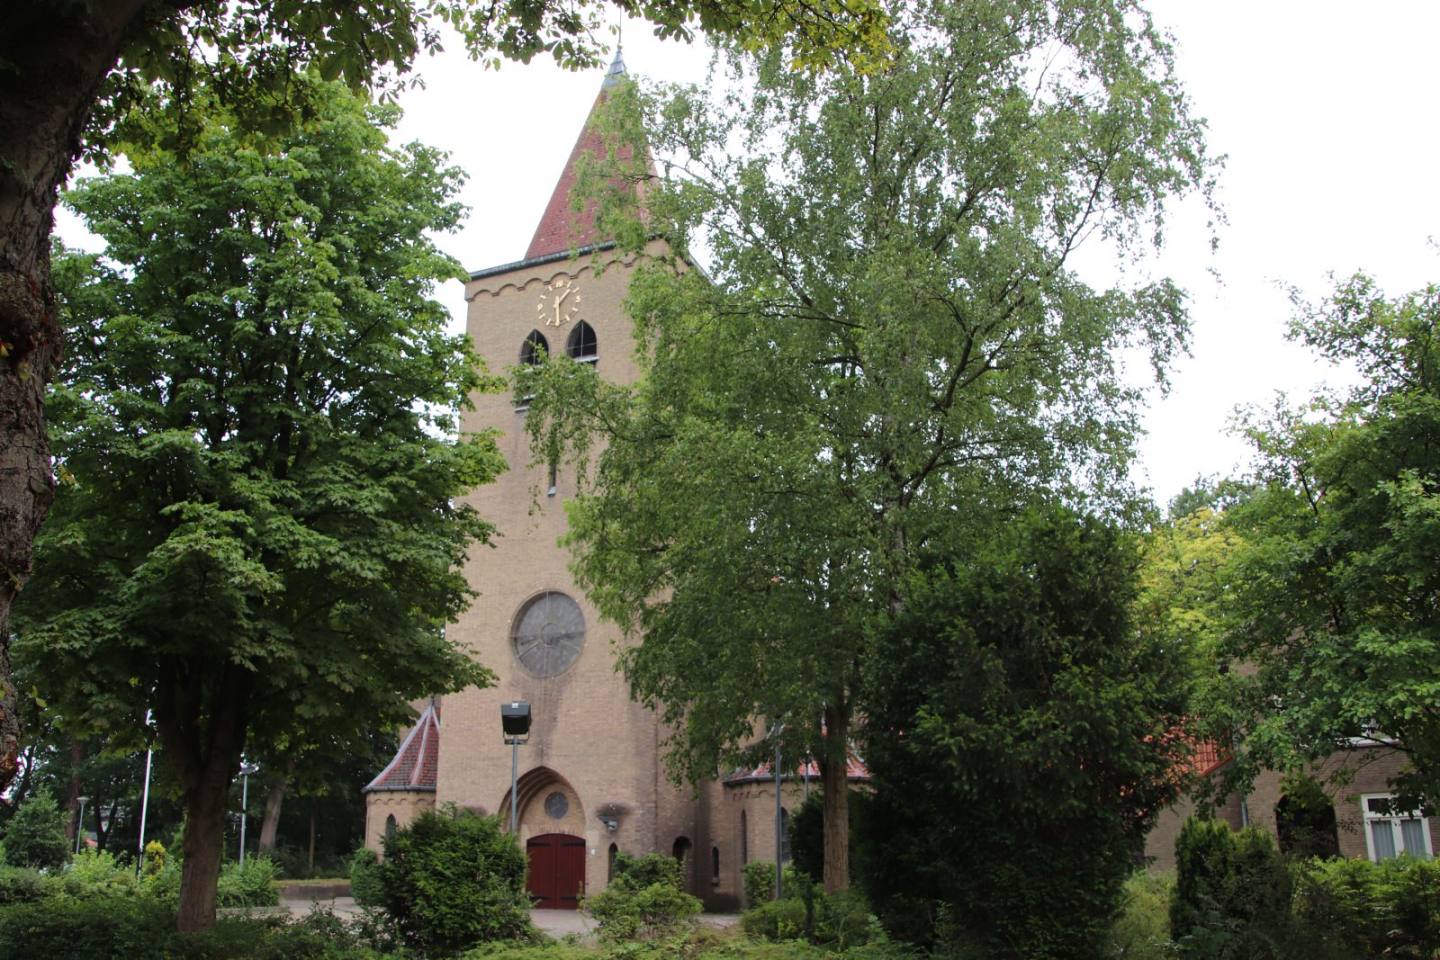 Kerk_SoestZuid_Familiekerk (115)